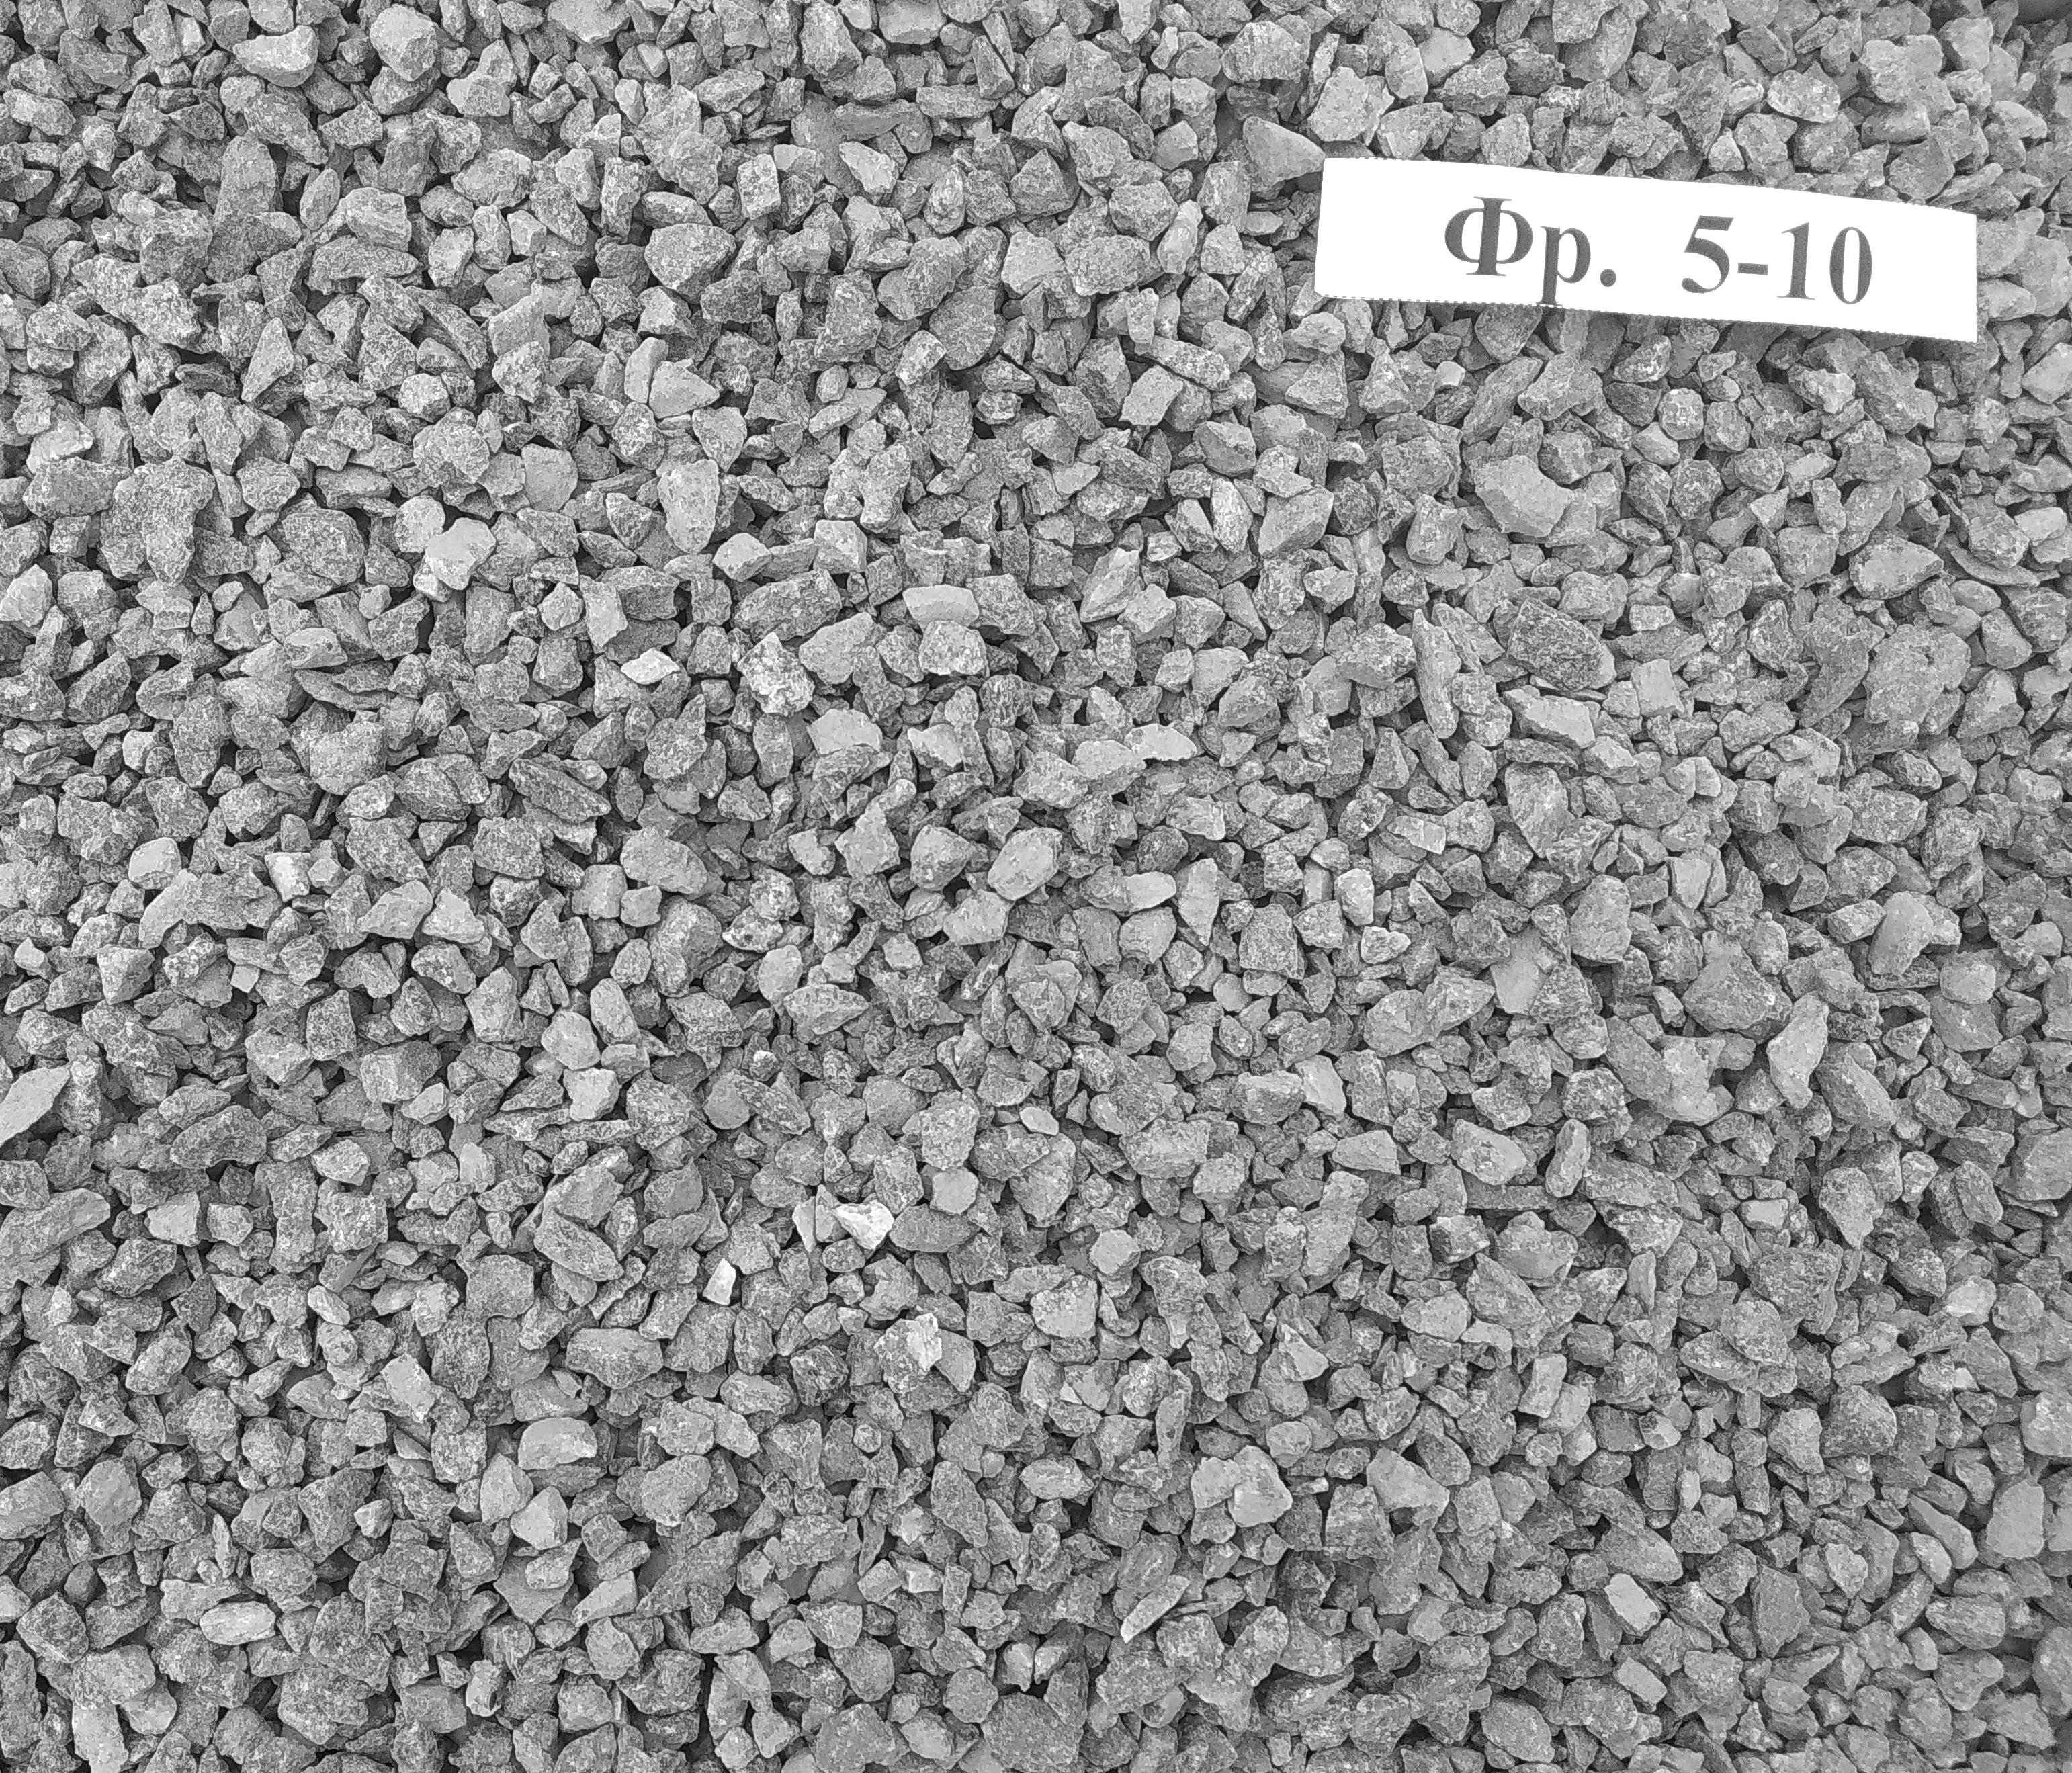 Crushed stone diorite (granodiorite) 5-10 mm